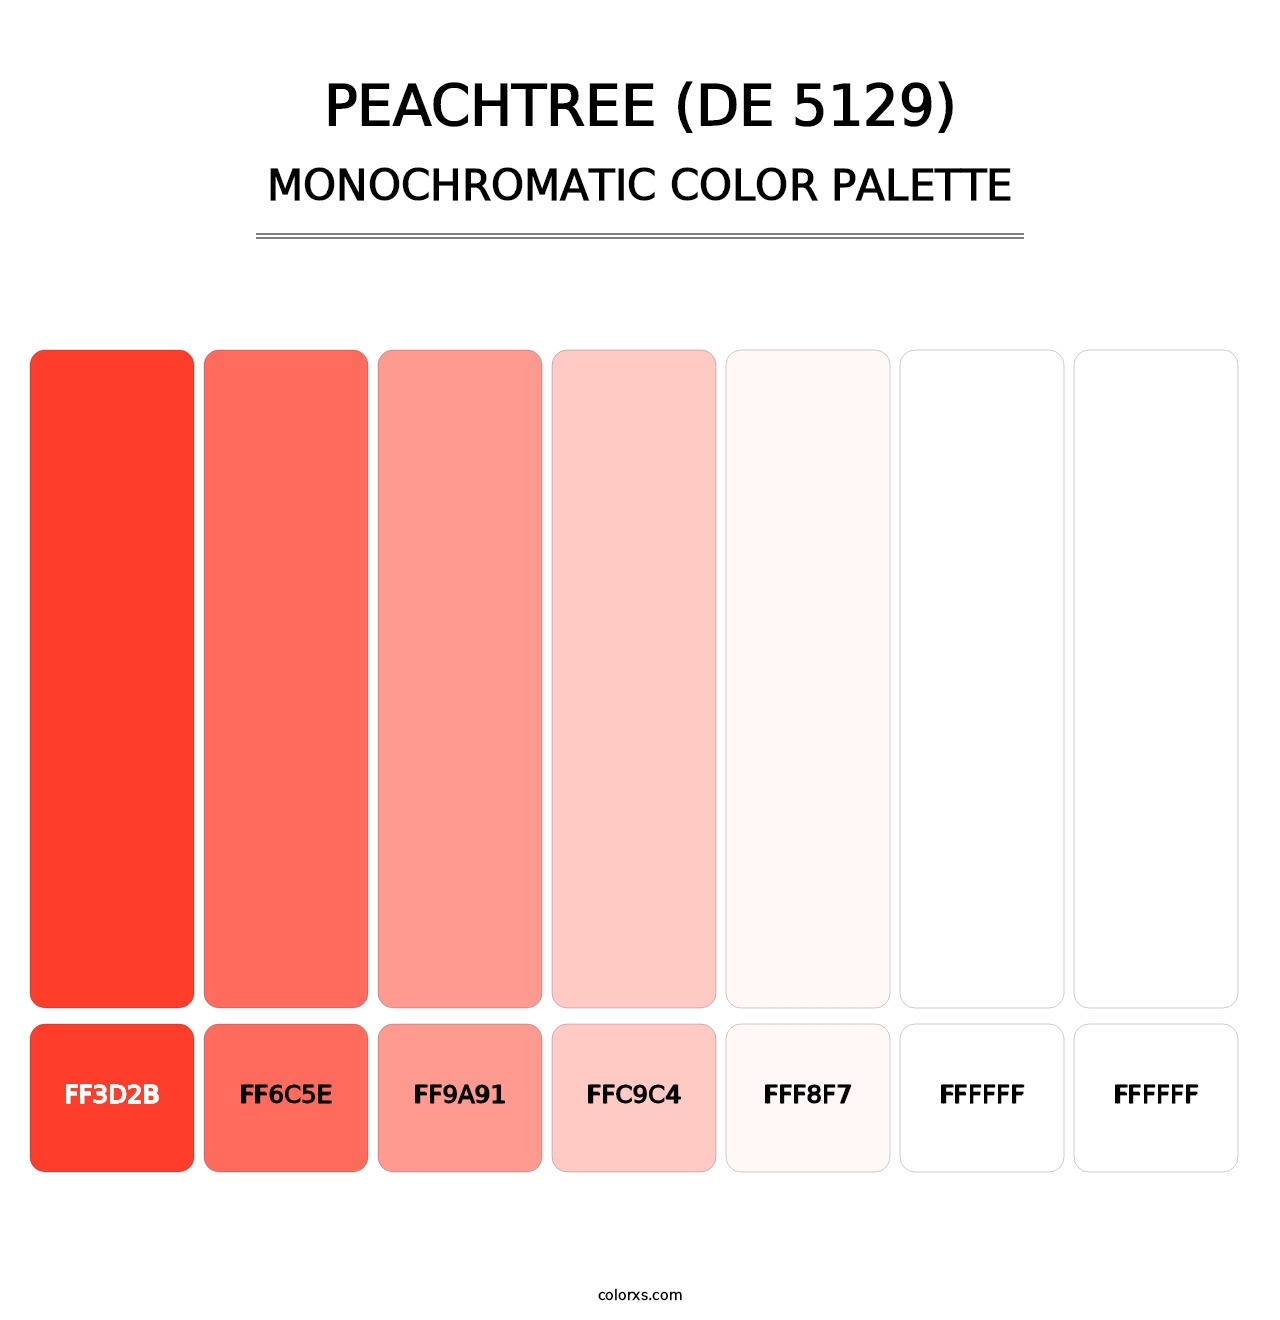 Peachtree (DE 5129) - Monochromatic Color Palette